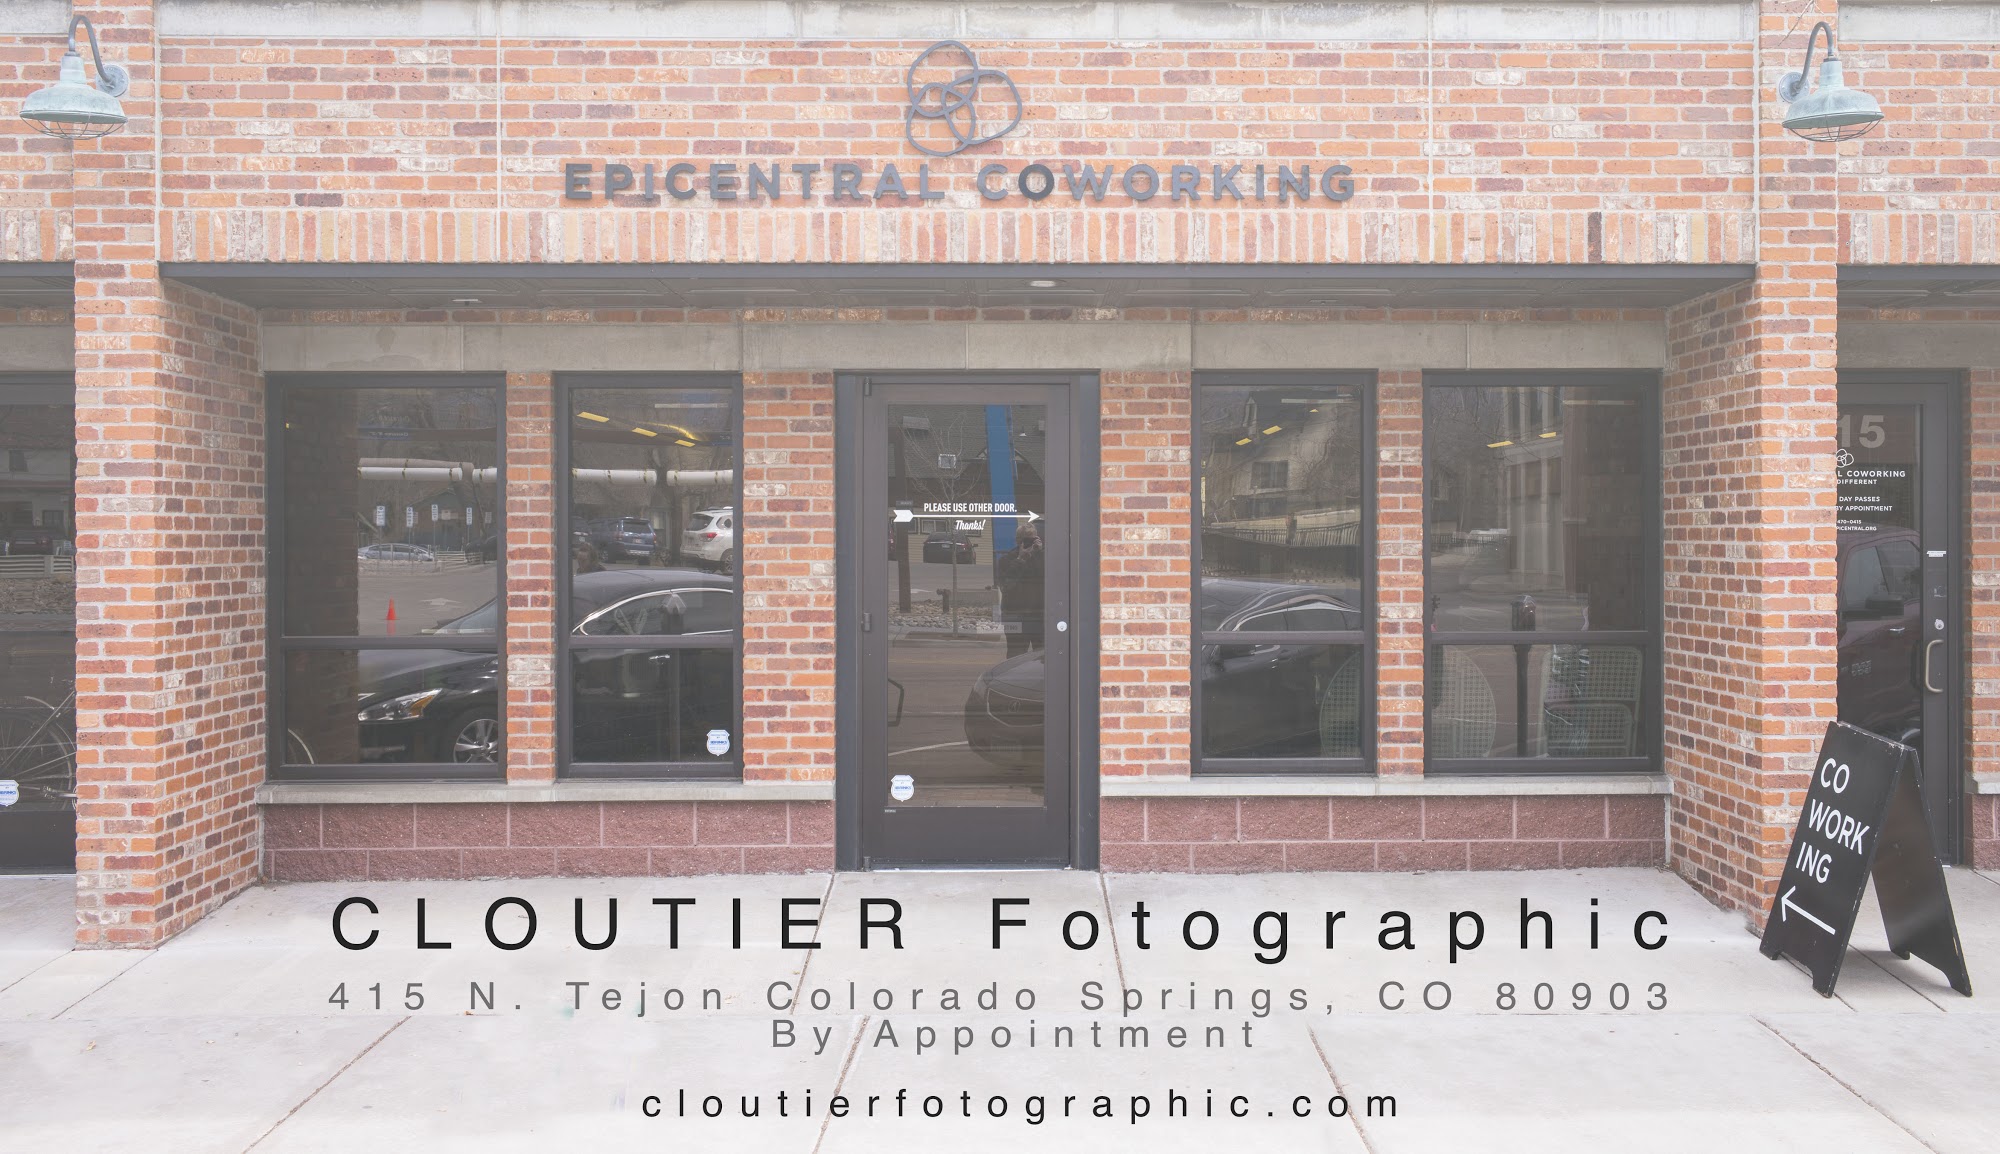 Cloutier Fotographic